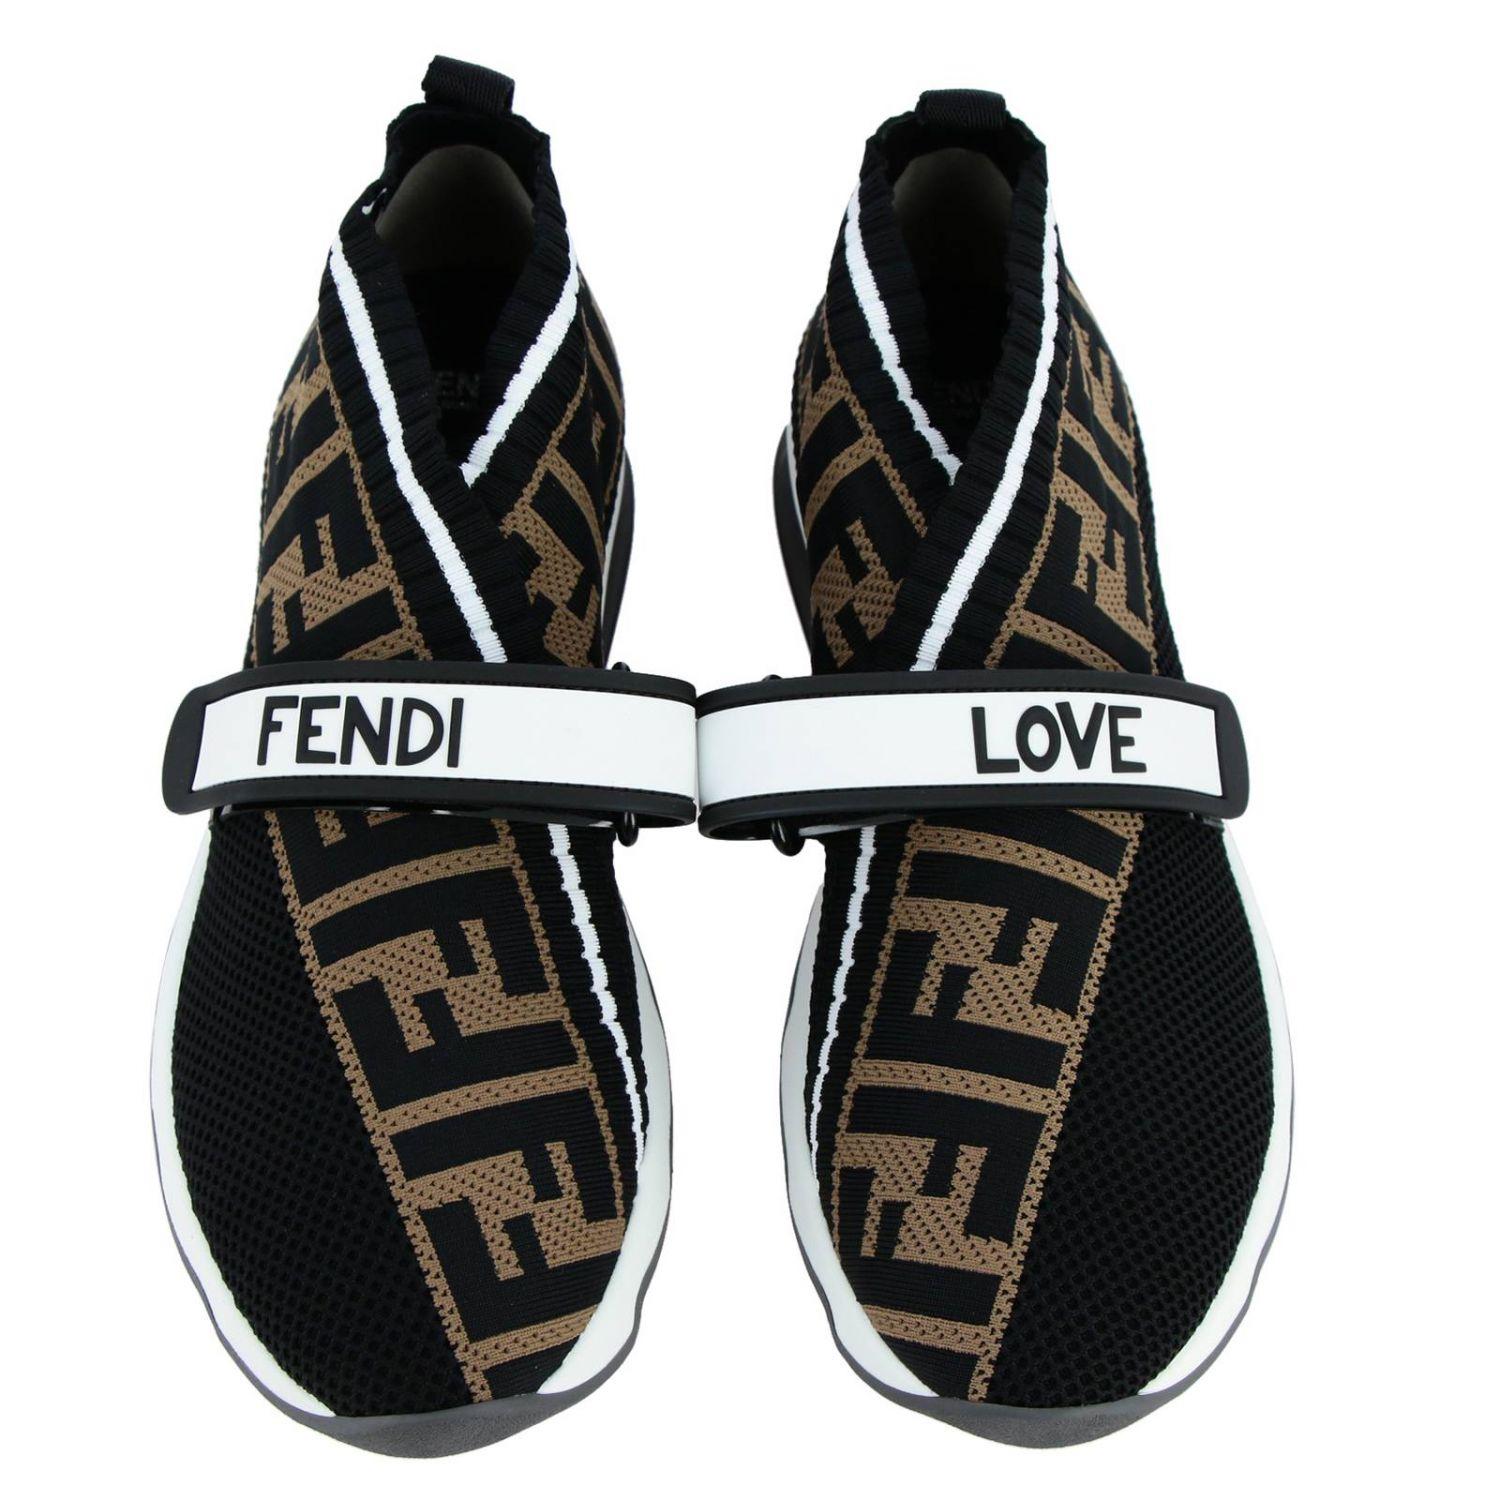 Fendi Rockoko Knit Sneakers in Black - Lyst